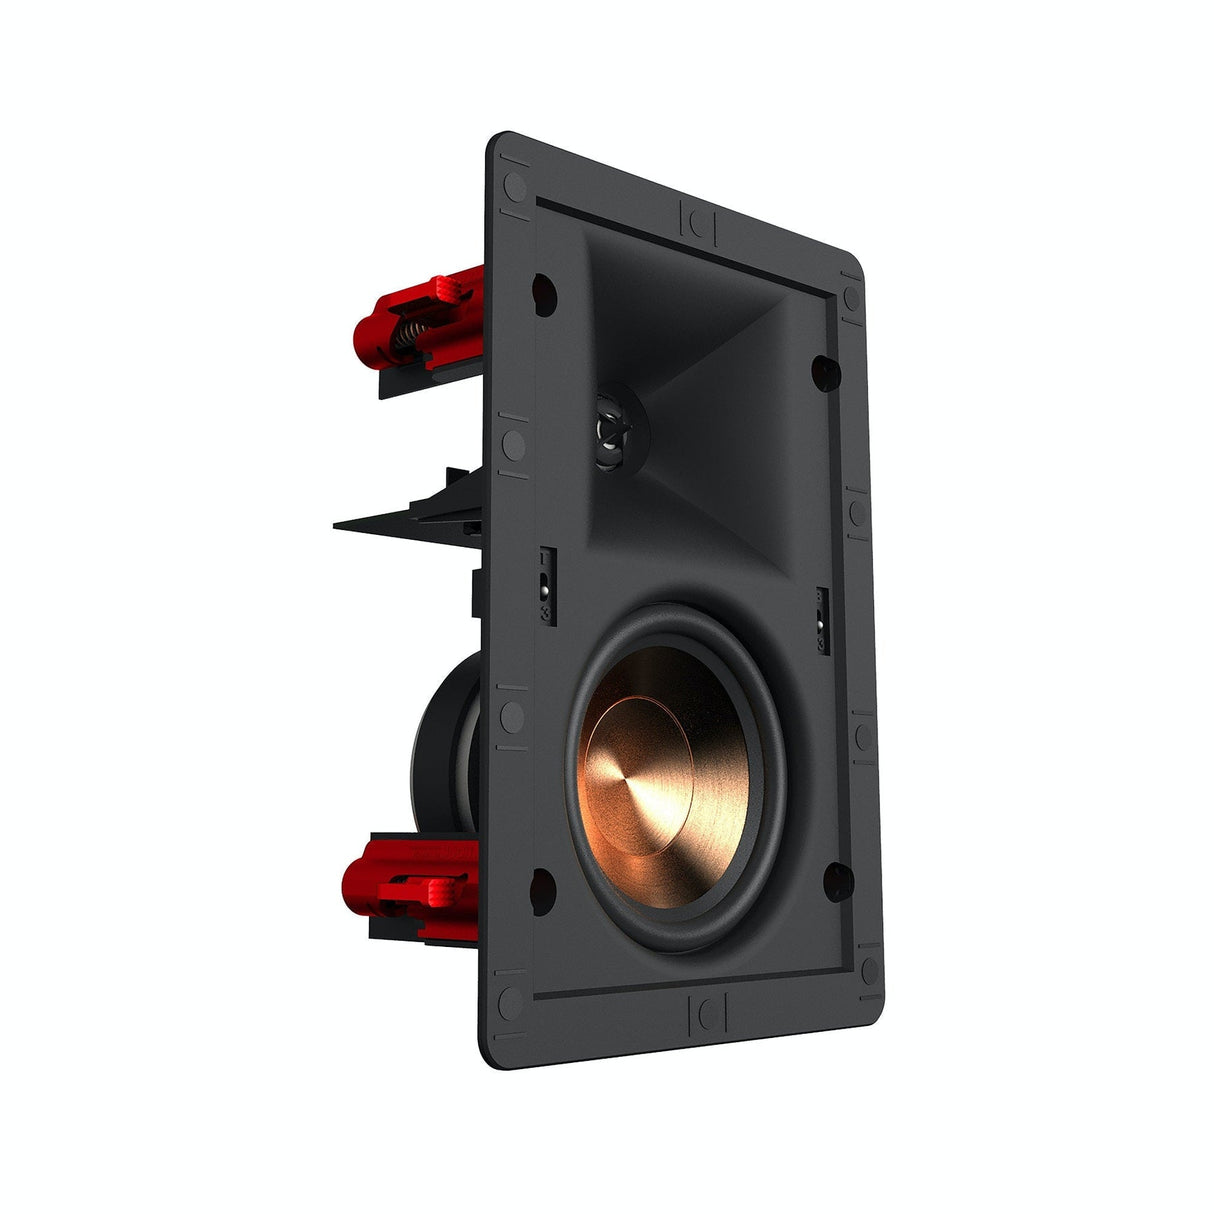 Klipsch PRO-14-RW 3.5" In-Wall Speaker – Each